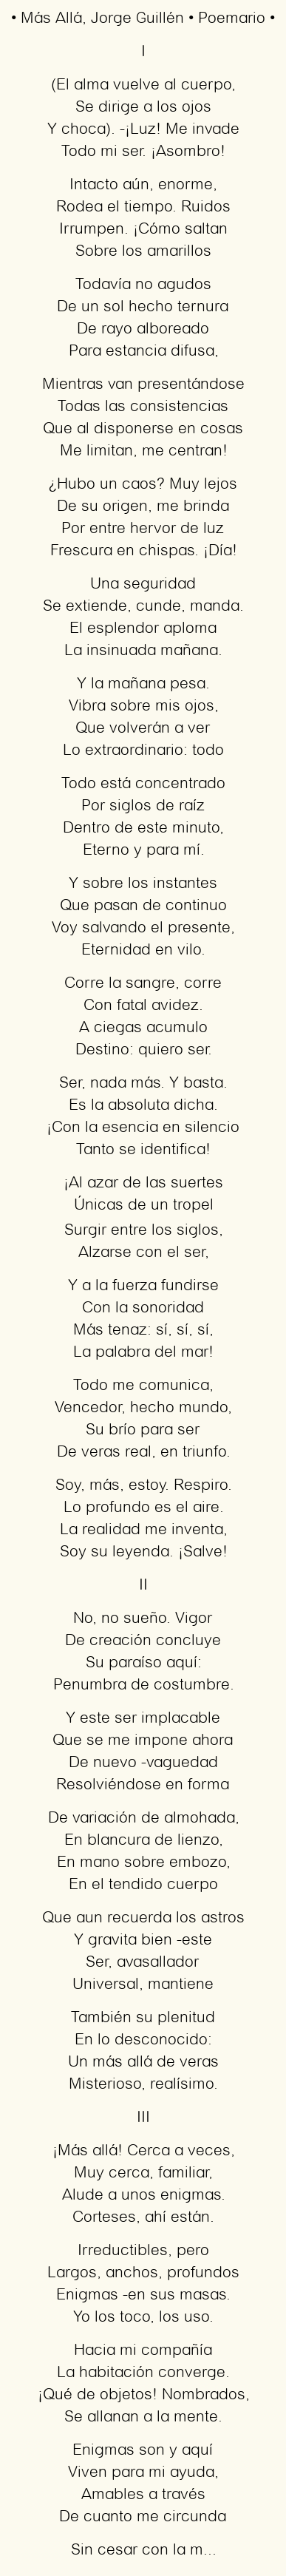 Imagen con el poema Más Allá, por Jorge Guillén